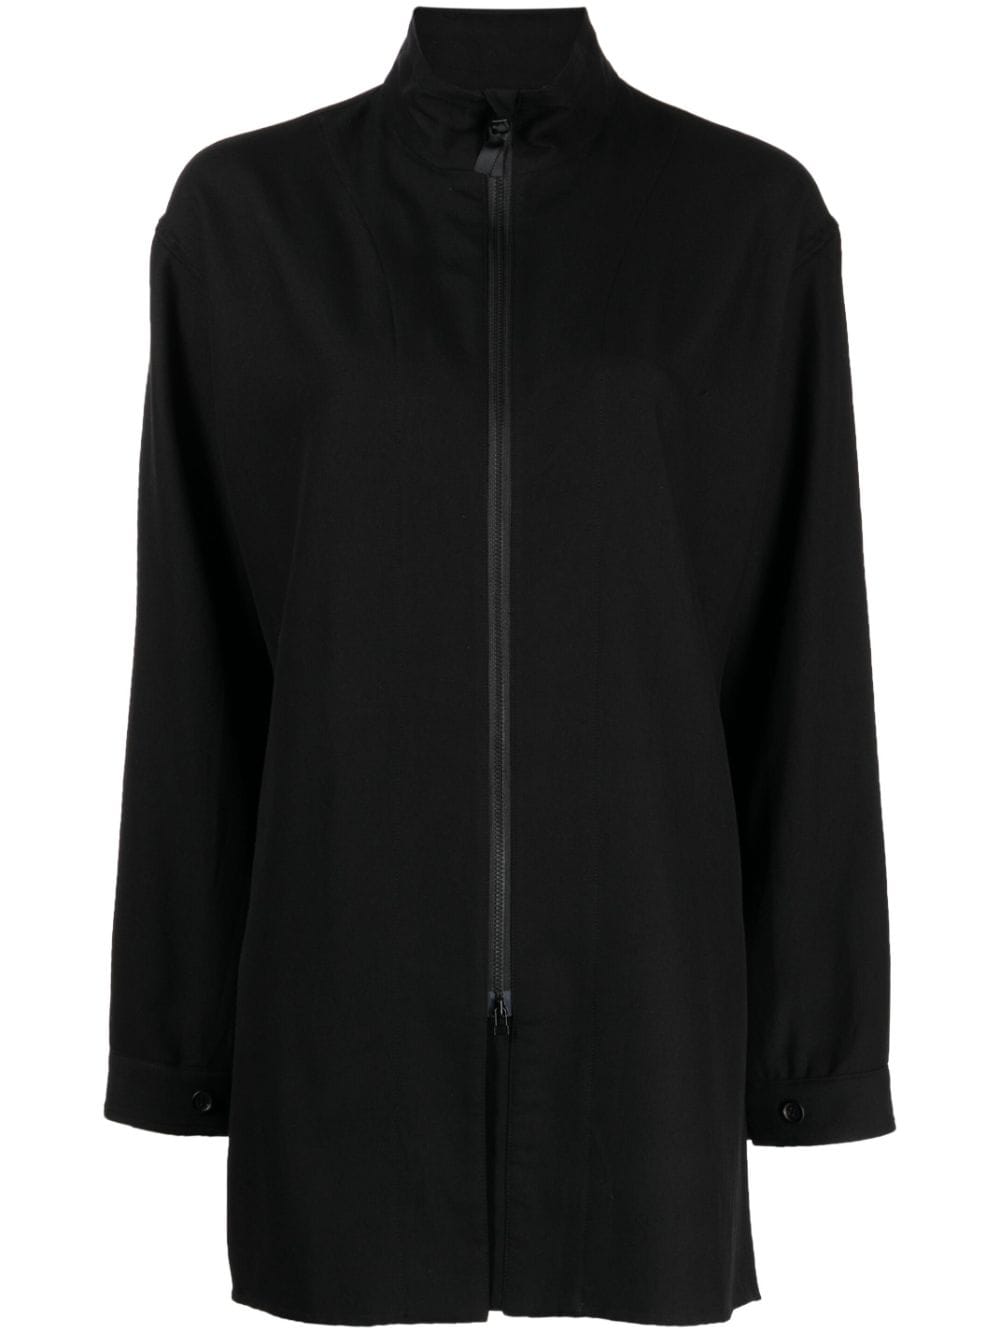 Image 1 of Yohji Yamamoto high-neck zip-up jacket